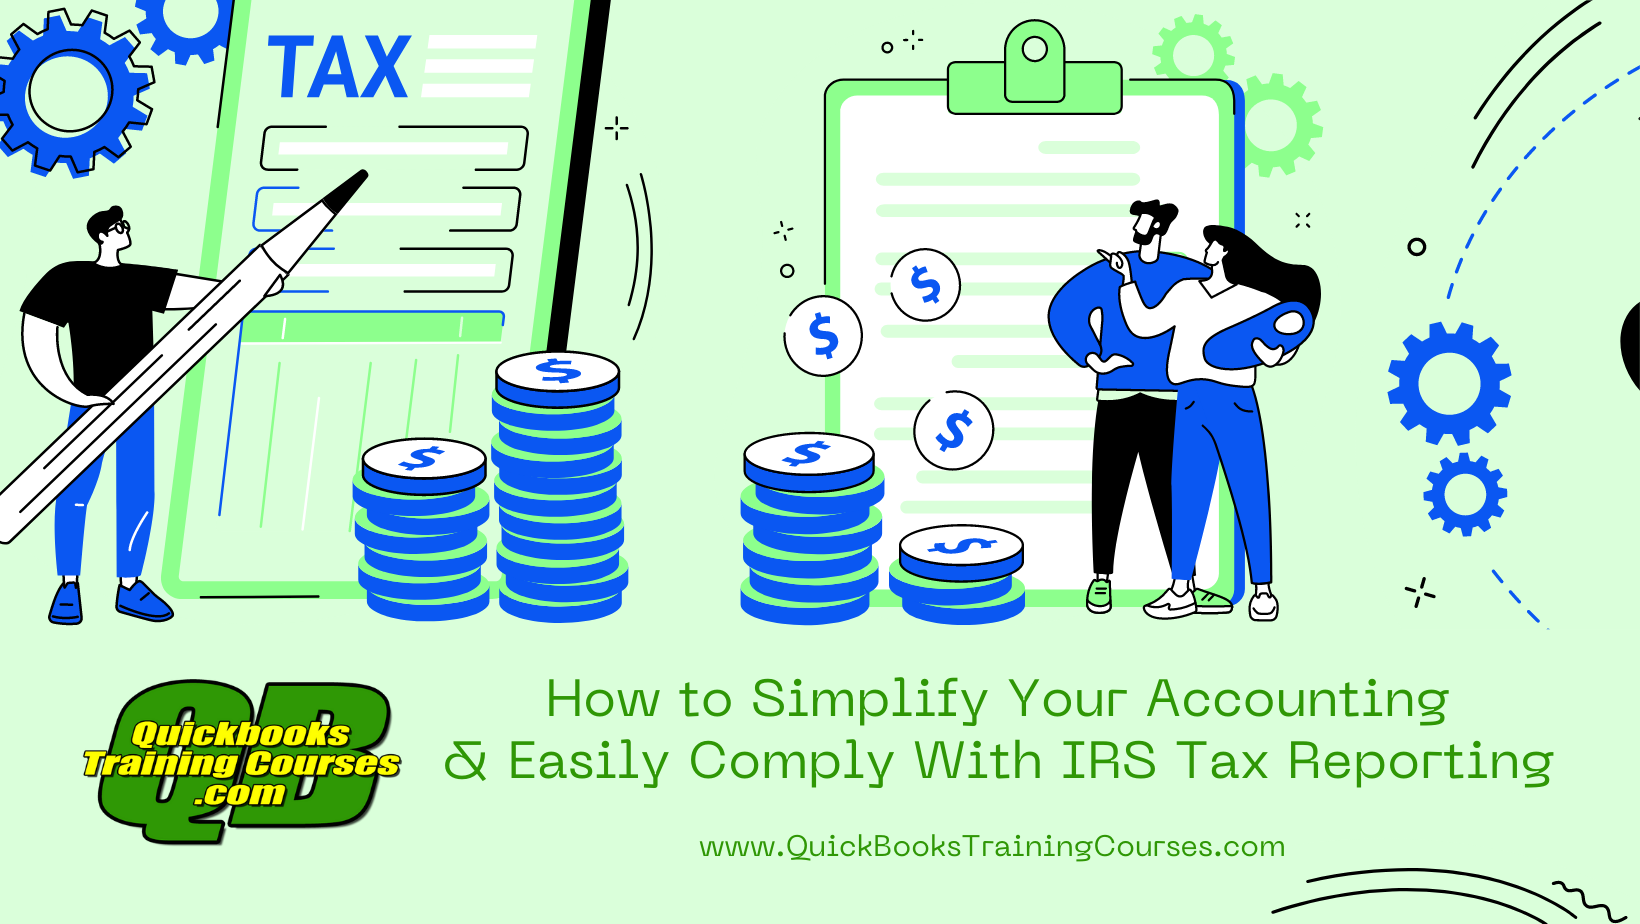 QuickBooks: Cómo Simplificar tu Contabilidad y Cumplir Fácilmente con la Declaración de Impuestos del IRS. Cursos de Capacitación en QuickBooks.